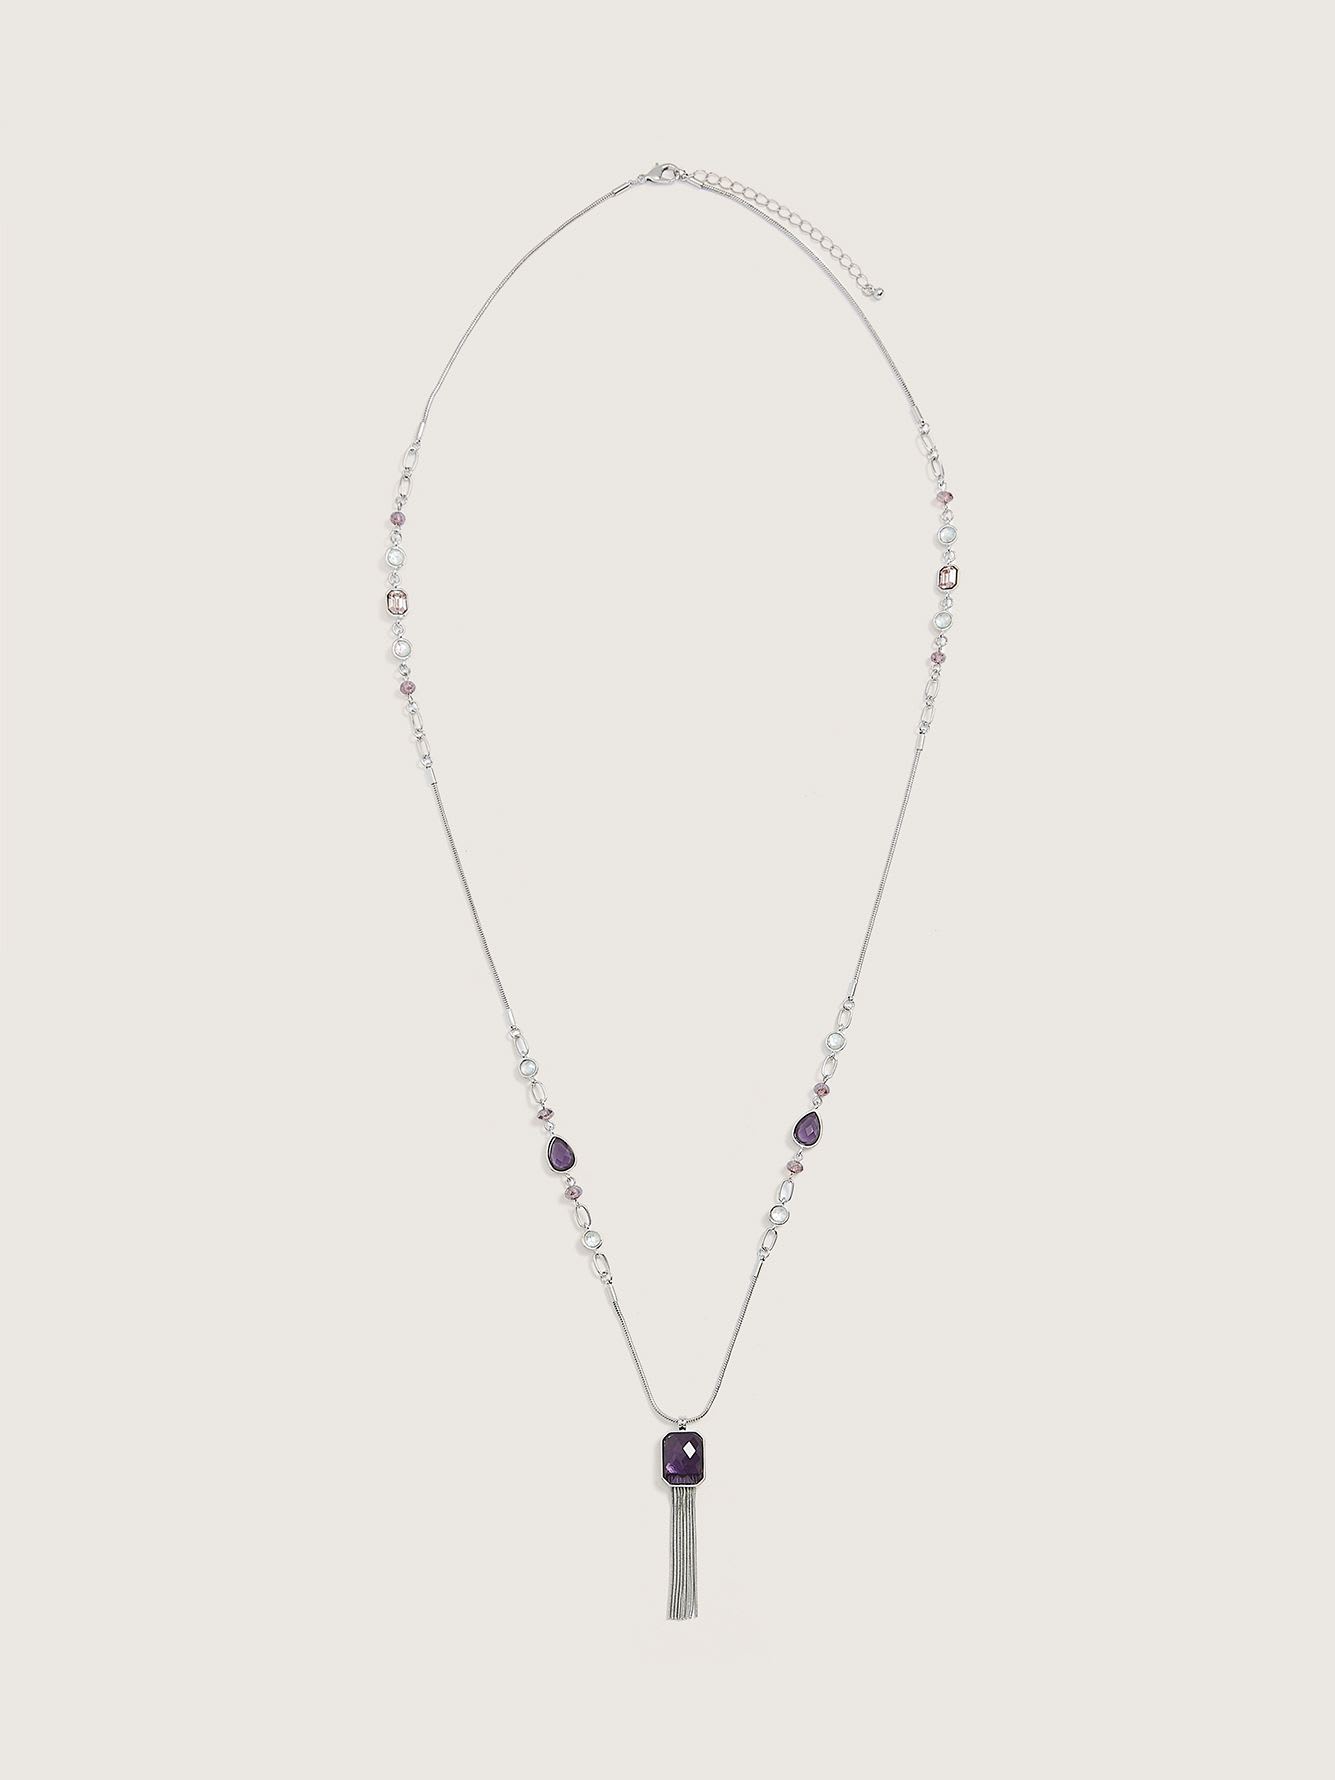 Long collier avec pendentif à pompom et grosse pierre